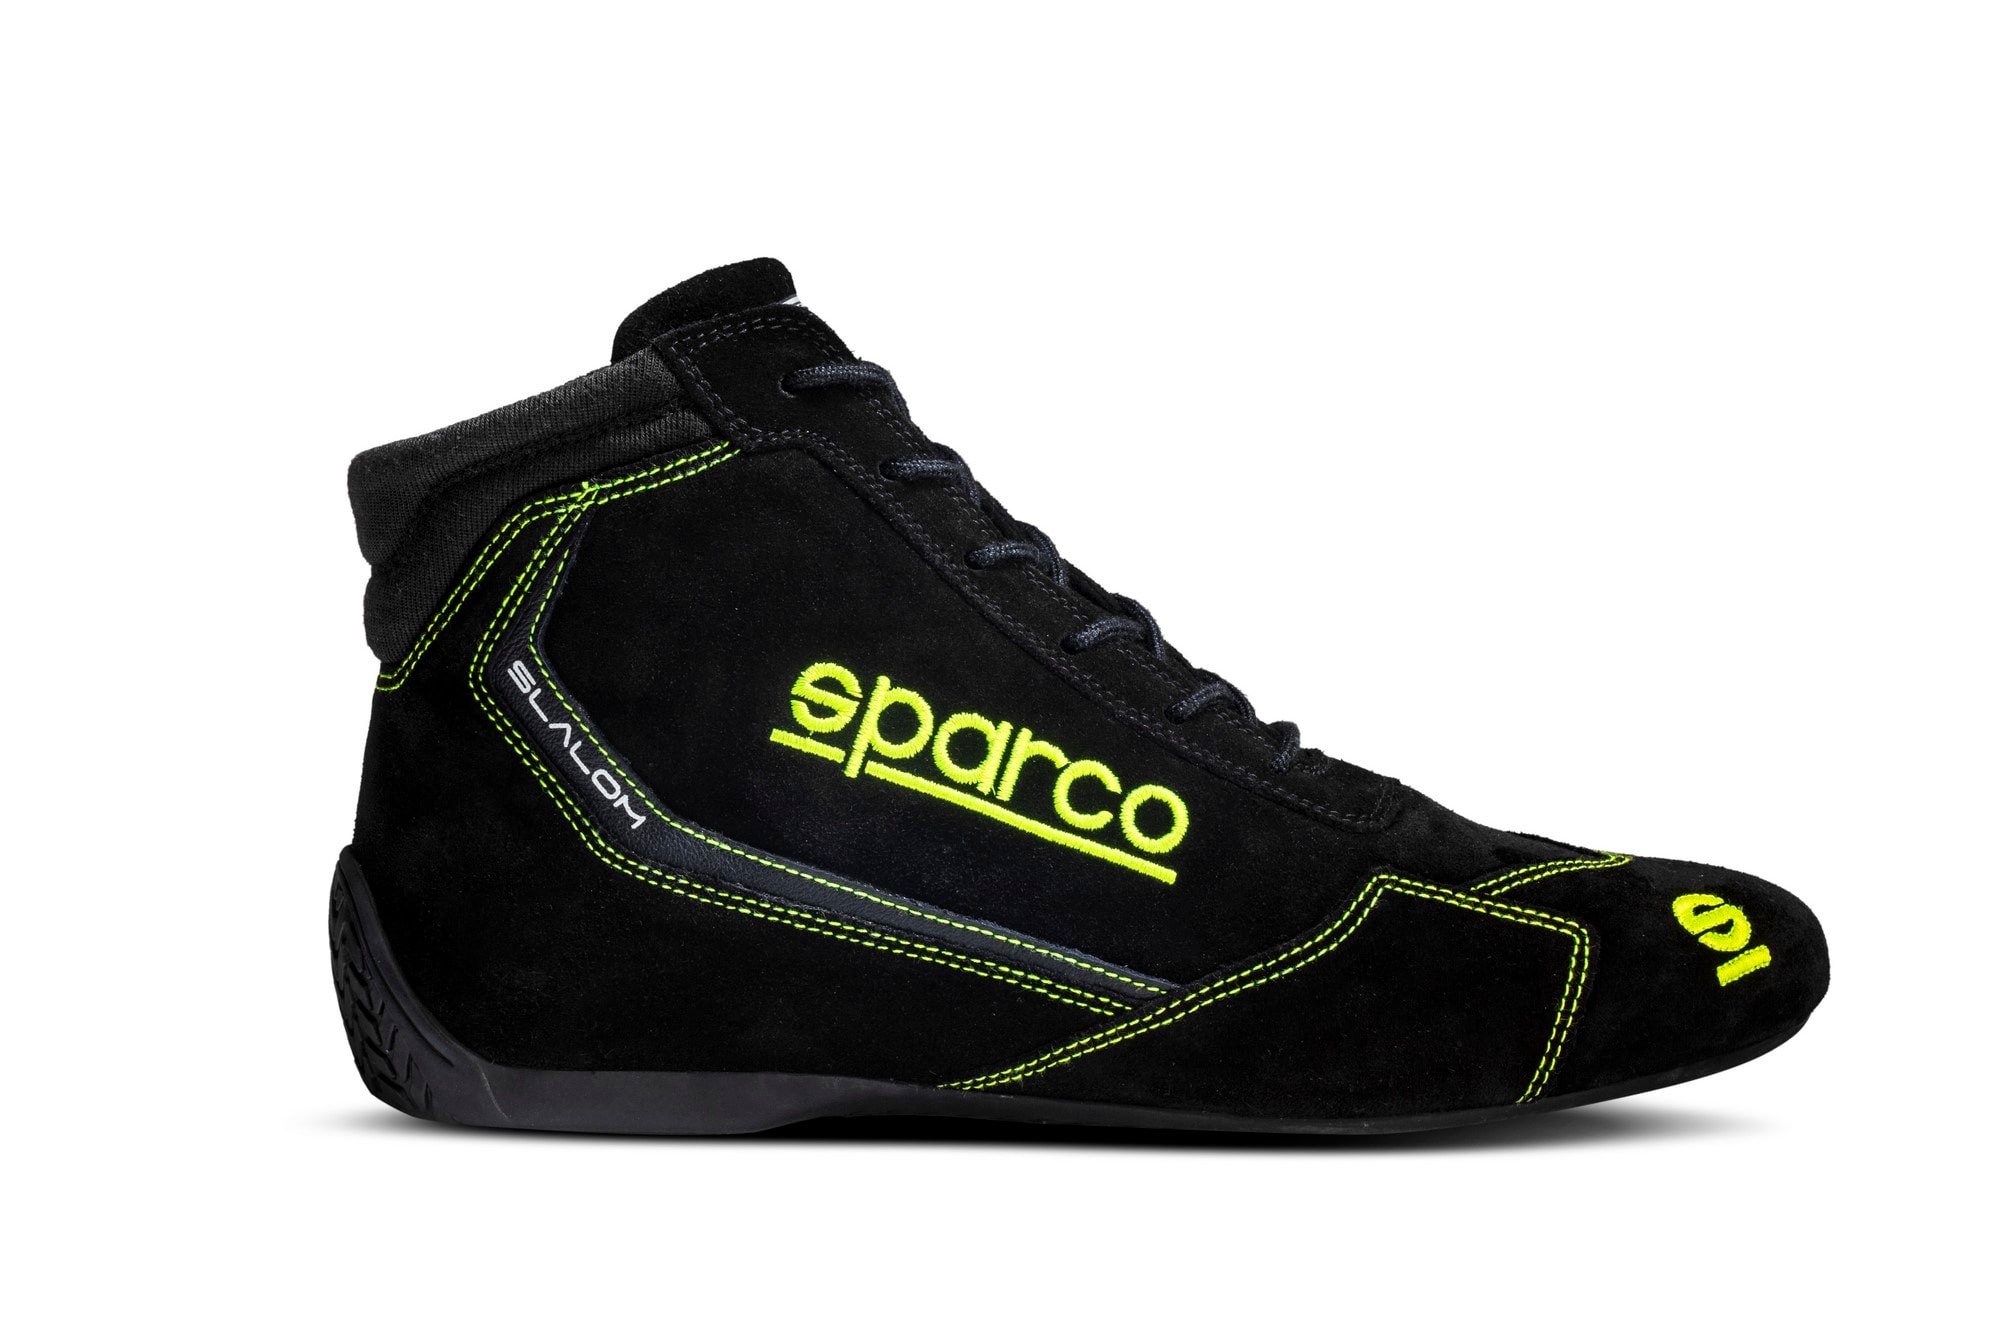 Kengät Sparco Slalom Musta/vihreä